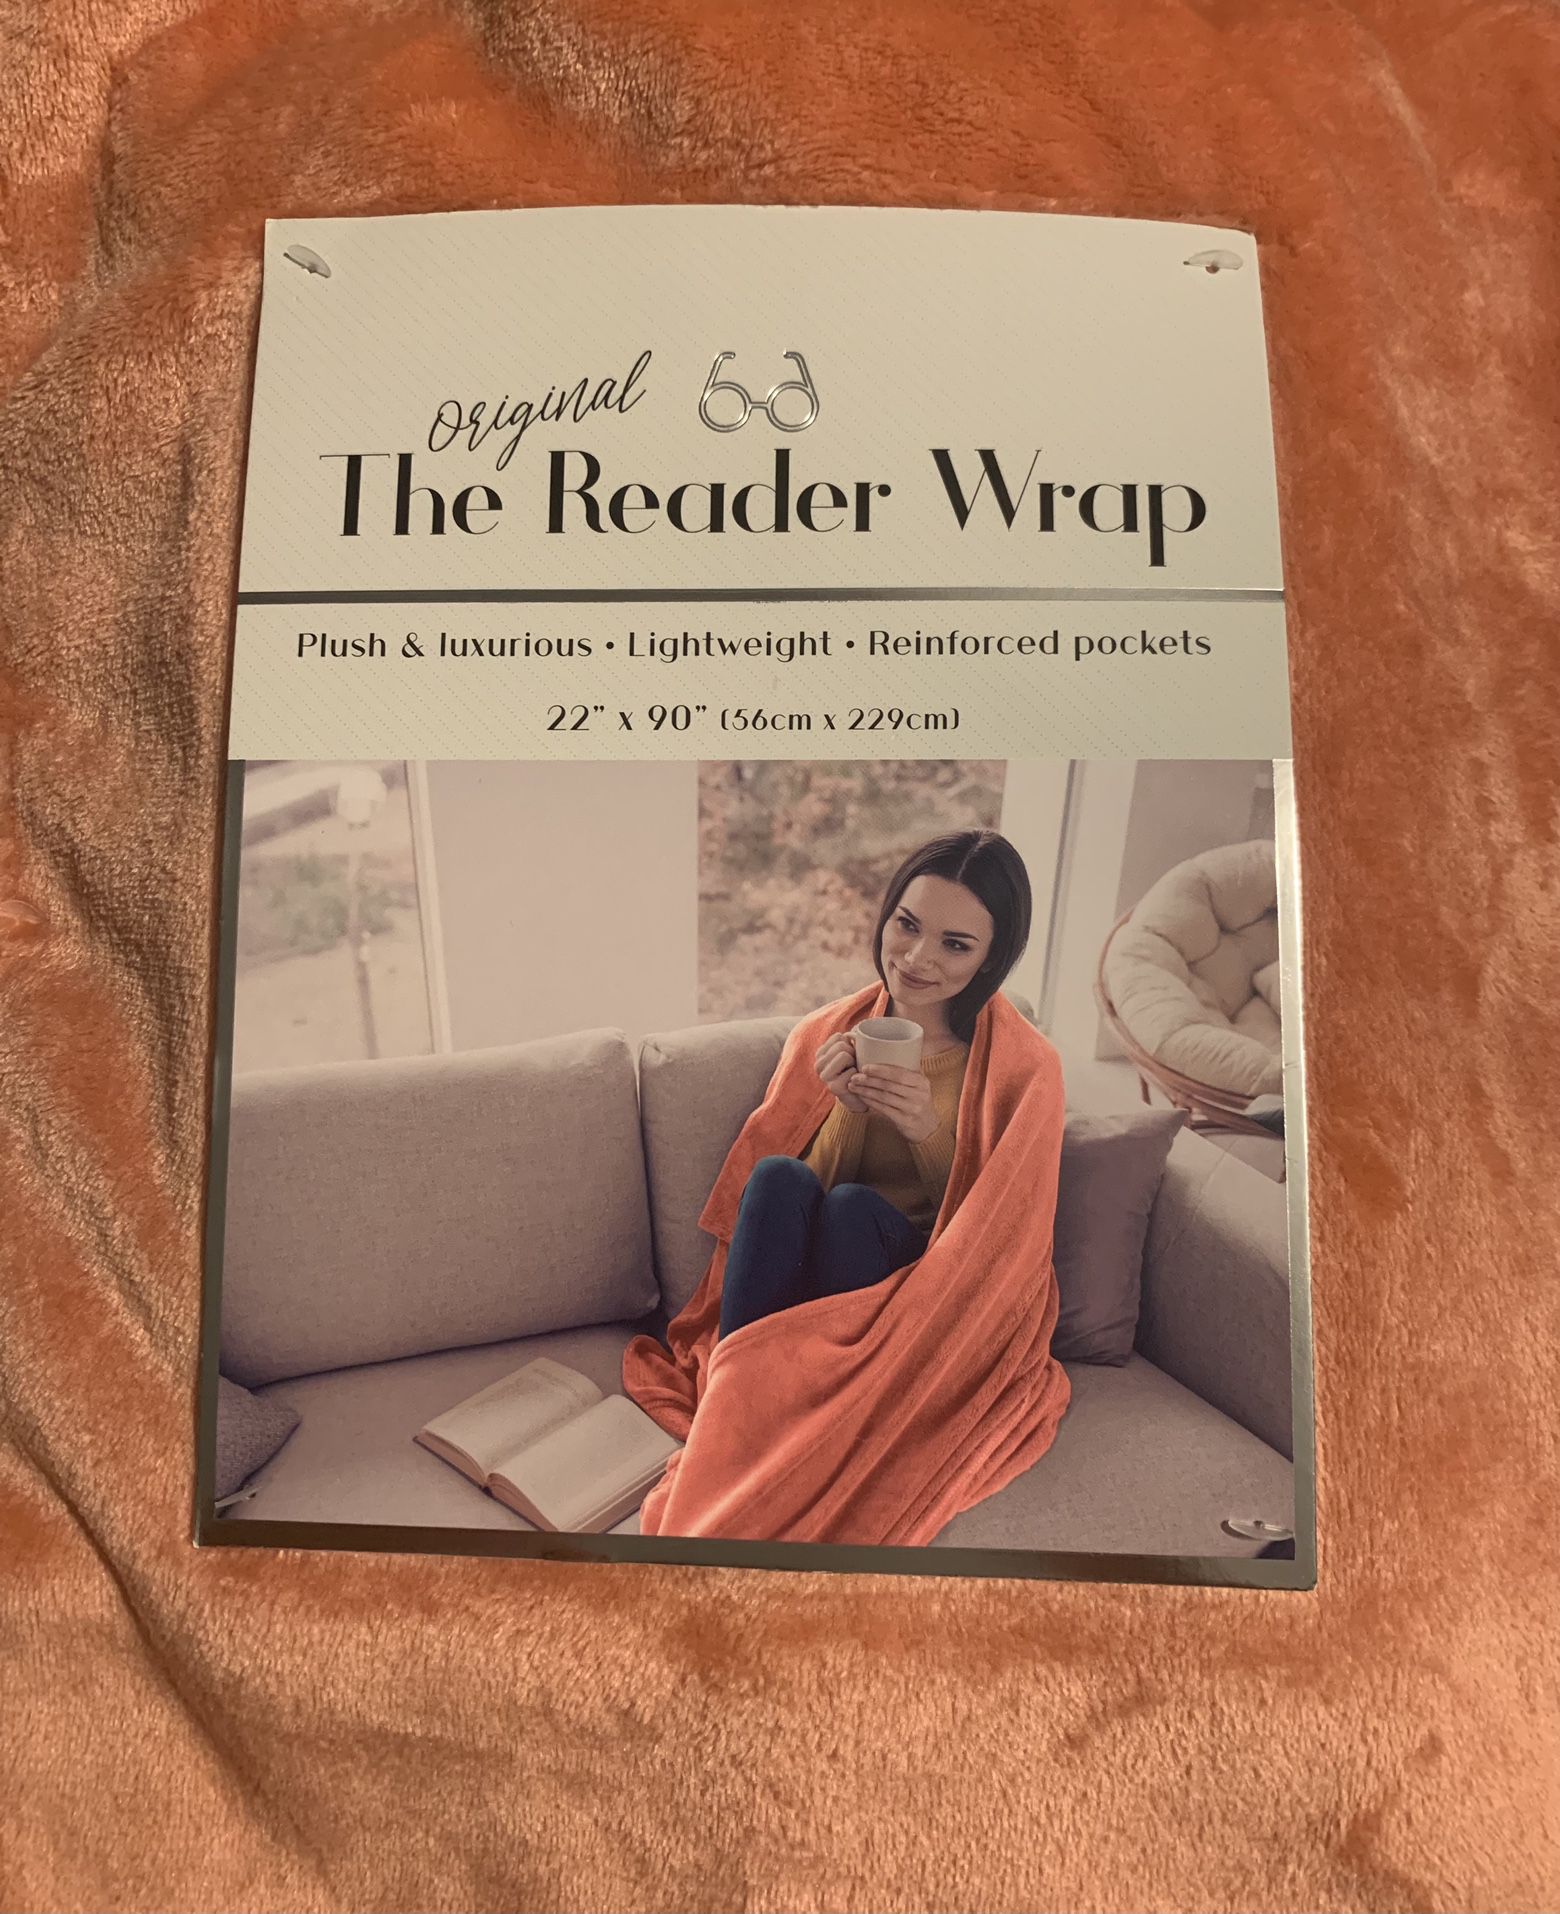 The original Reader Wrap Peach